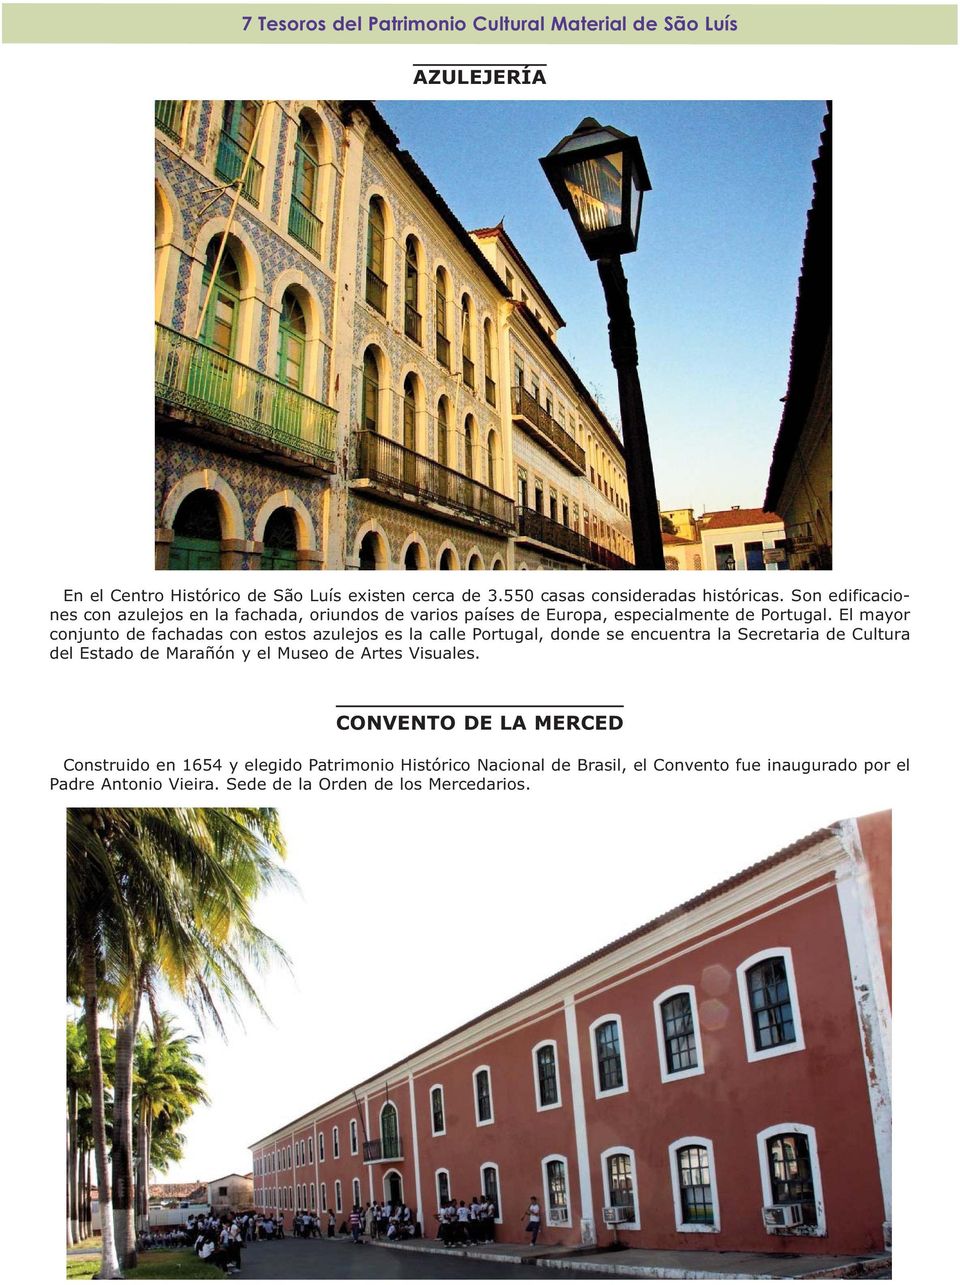 El mayor conjunto de fachadas con estos azulejos es la calle Portugal, donde se encuentra la Secretaria de Cultura del Estado de Marañón y el Museo de